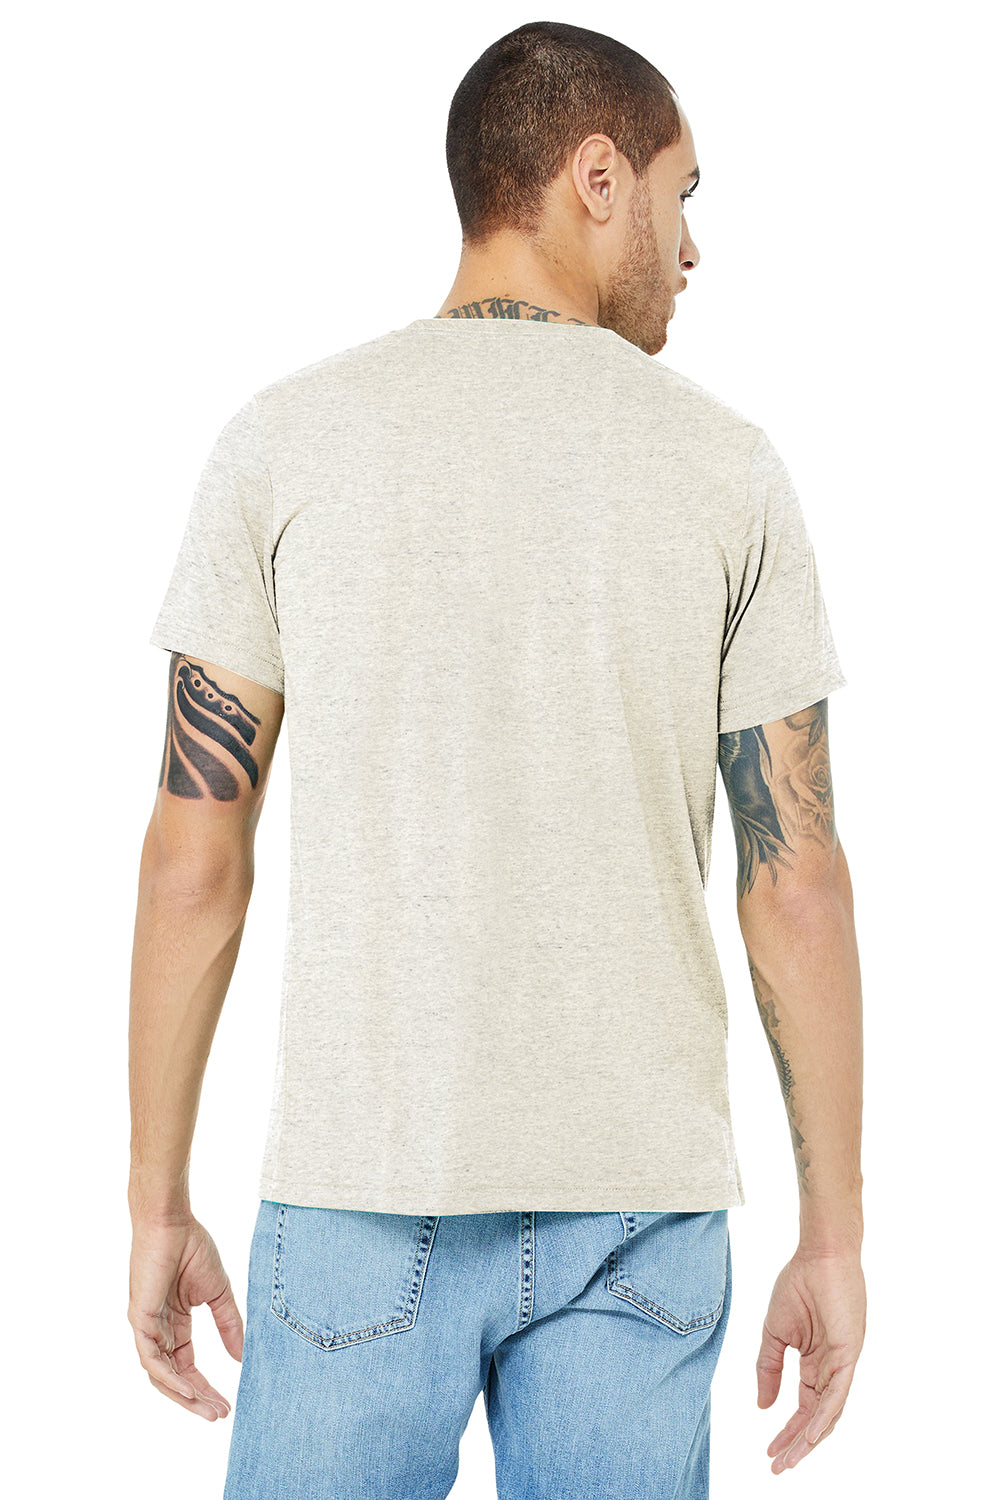 Bella + Canvas BC3413/3413C/3413 Mens Short Sleeve Crewneck T-Shirt Oatmeal Model Back